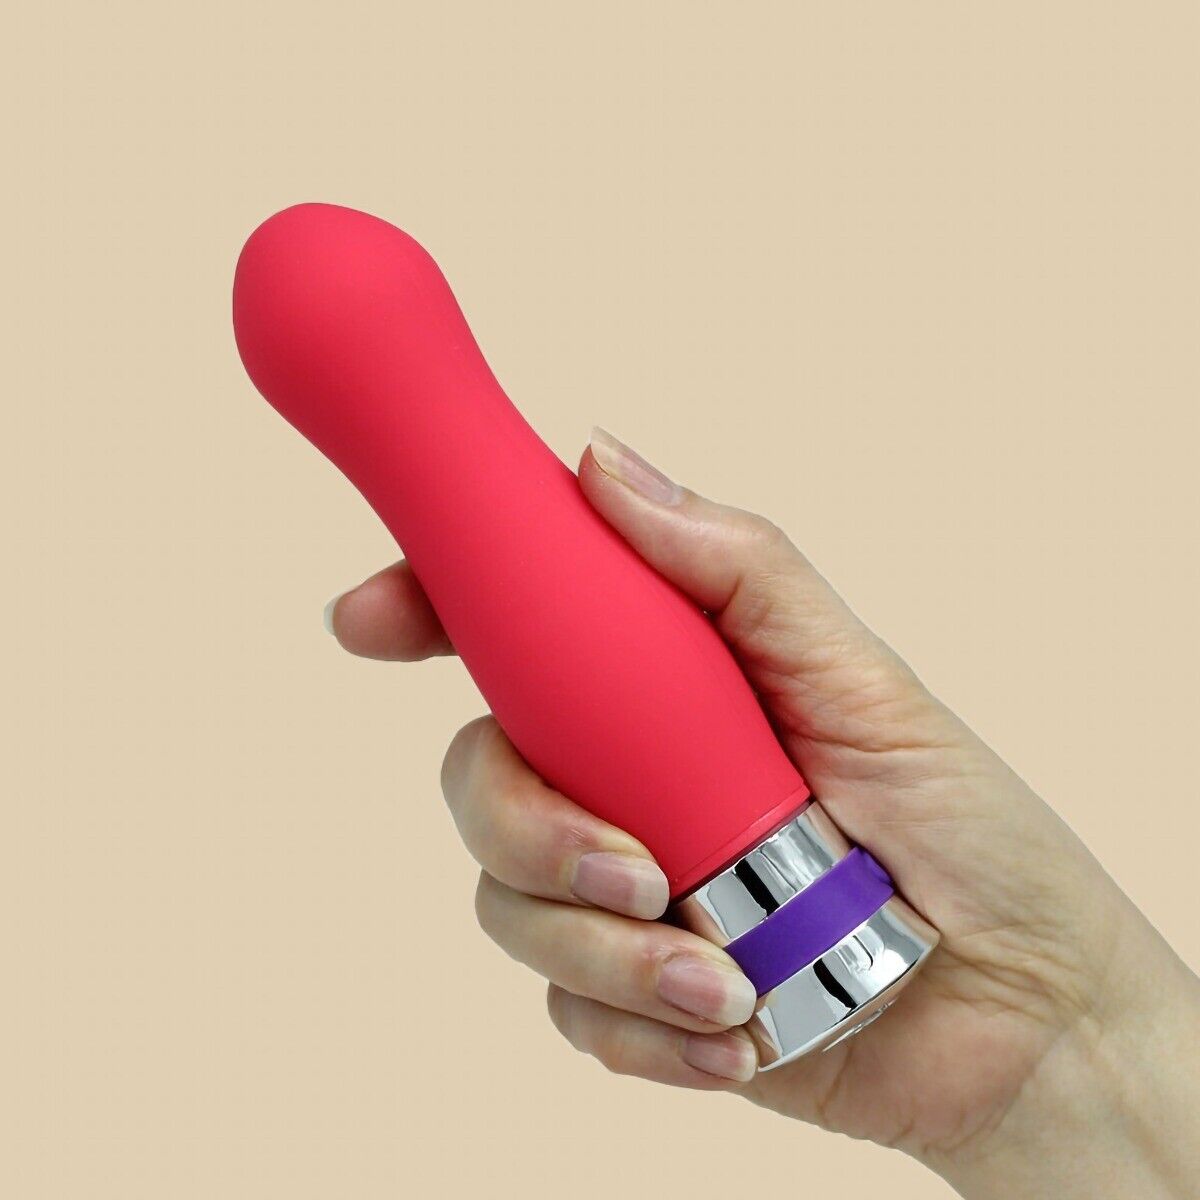 Flexible Smooth Silicone G-spot Anal Vibrator Dildo Sex Toys for Women Couple